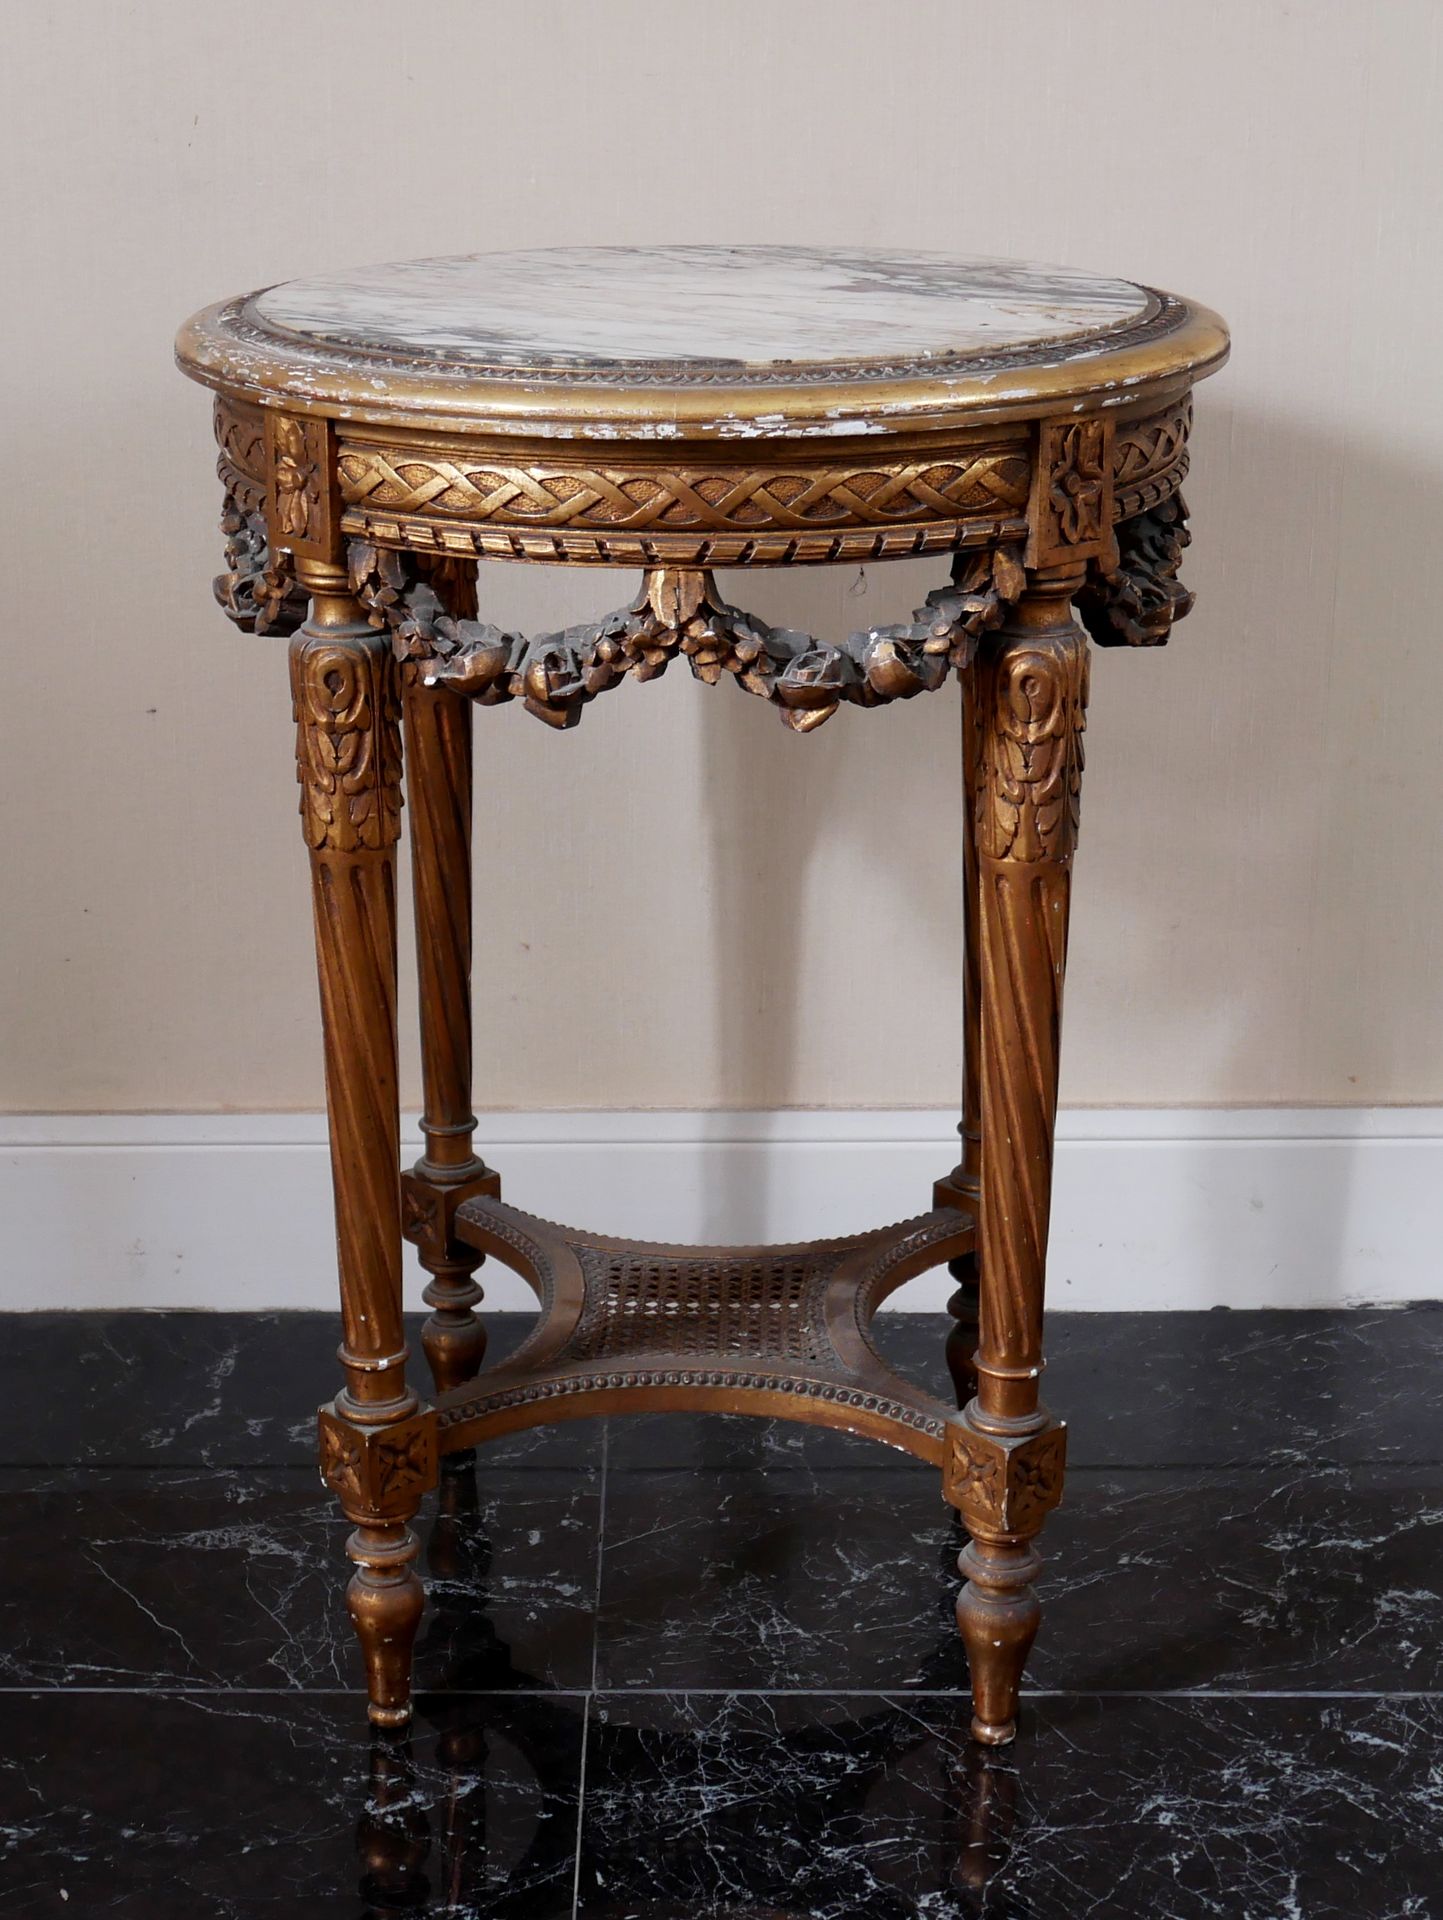 Null 镀金木质圆座桌，锥形桌腿与凹槽桌面相连，白色大理石带灰色纹理，路易十六风格

高：74,5 深：54 厘米（大理石损坏）。